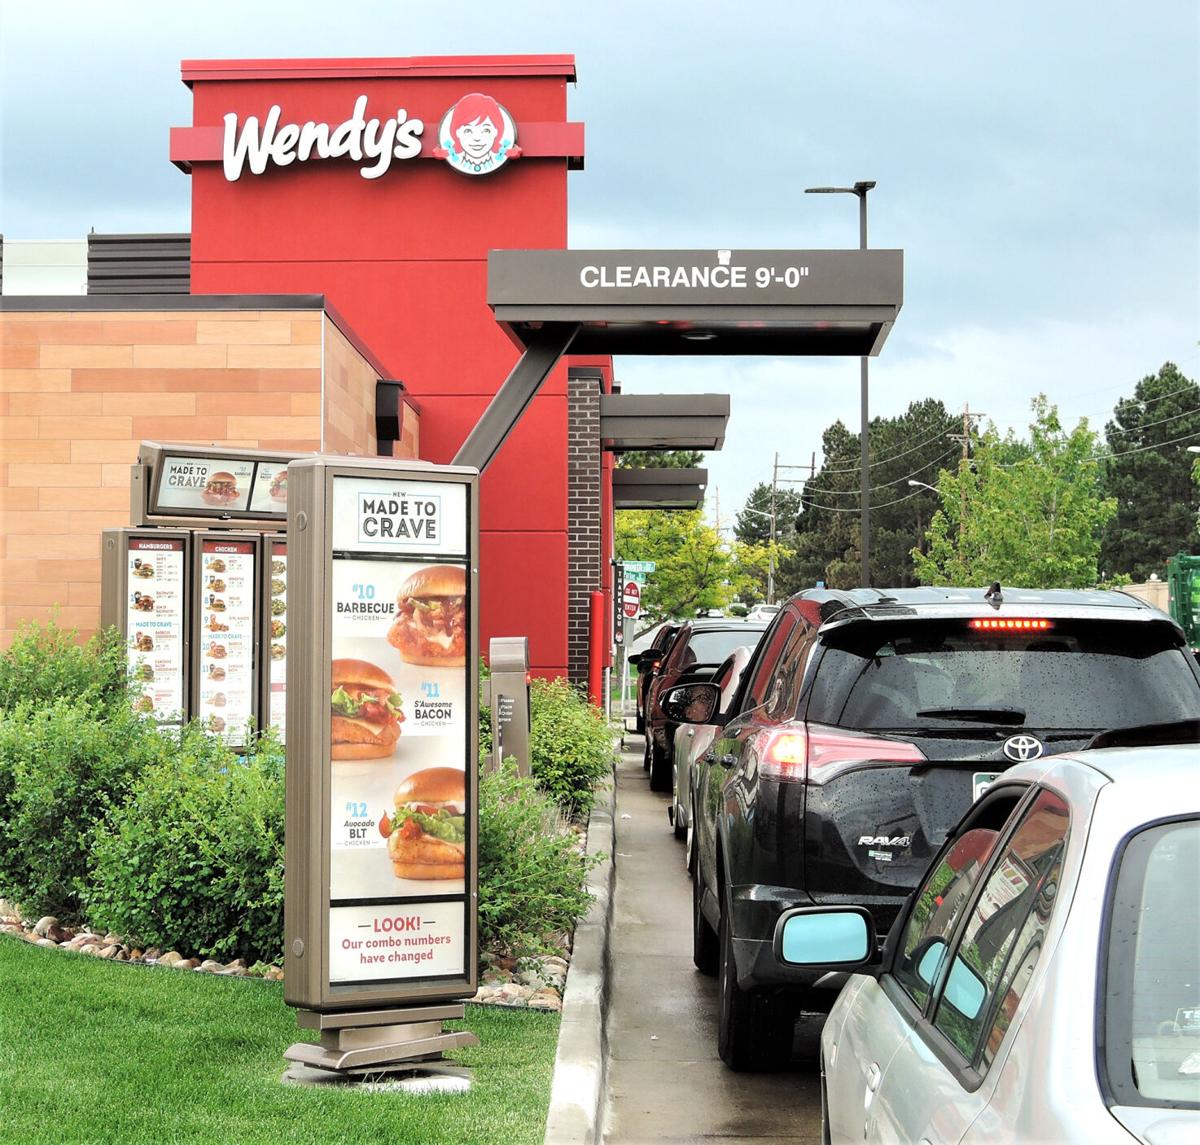 La cadena de fastfood Wendy's compra soportes de autoservicio a Countermatic